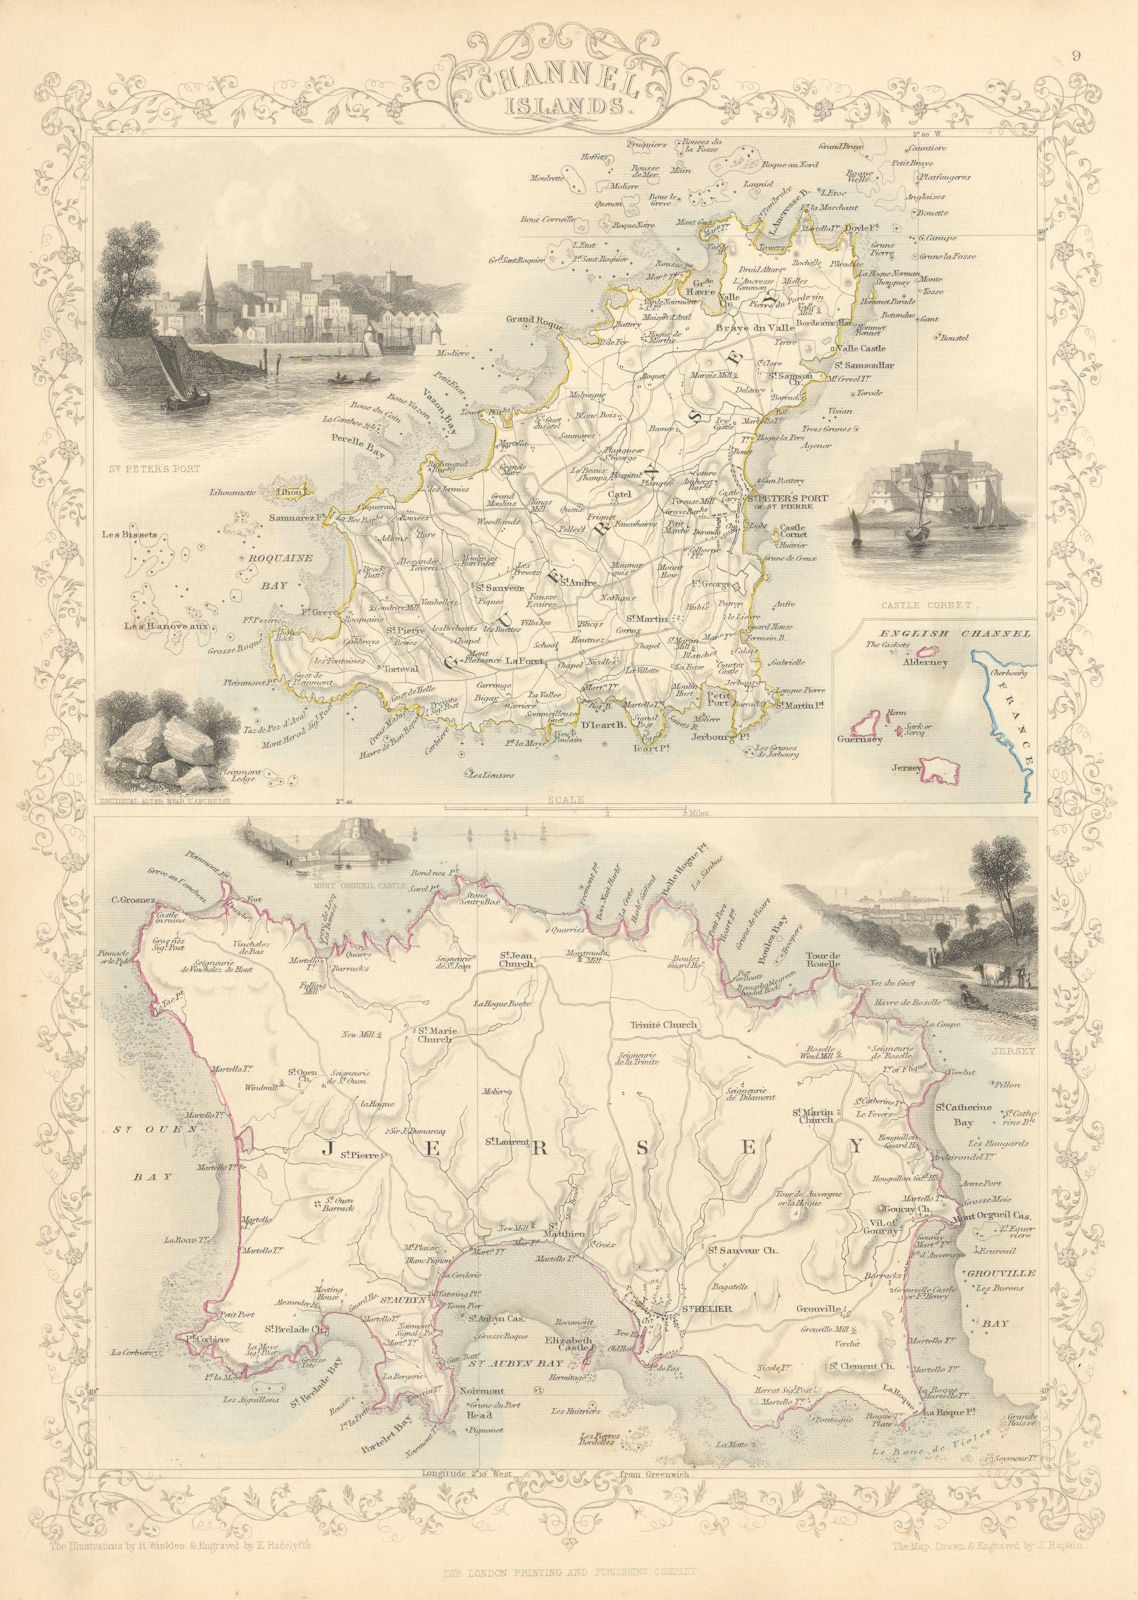 CHANNEL ISLANDS. St Peter Port view. Jersey & Guernsey. TALLIS & RAPKIN 1851 map